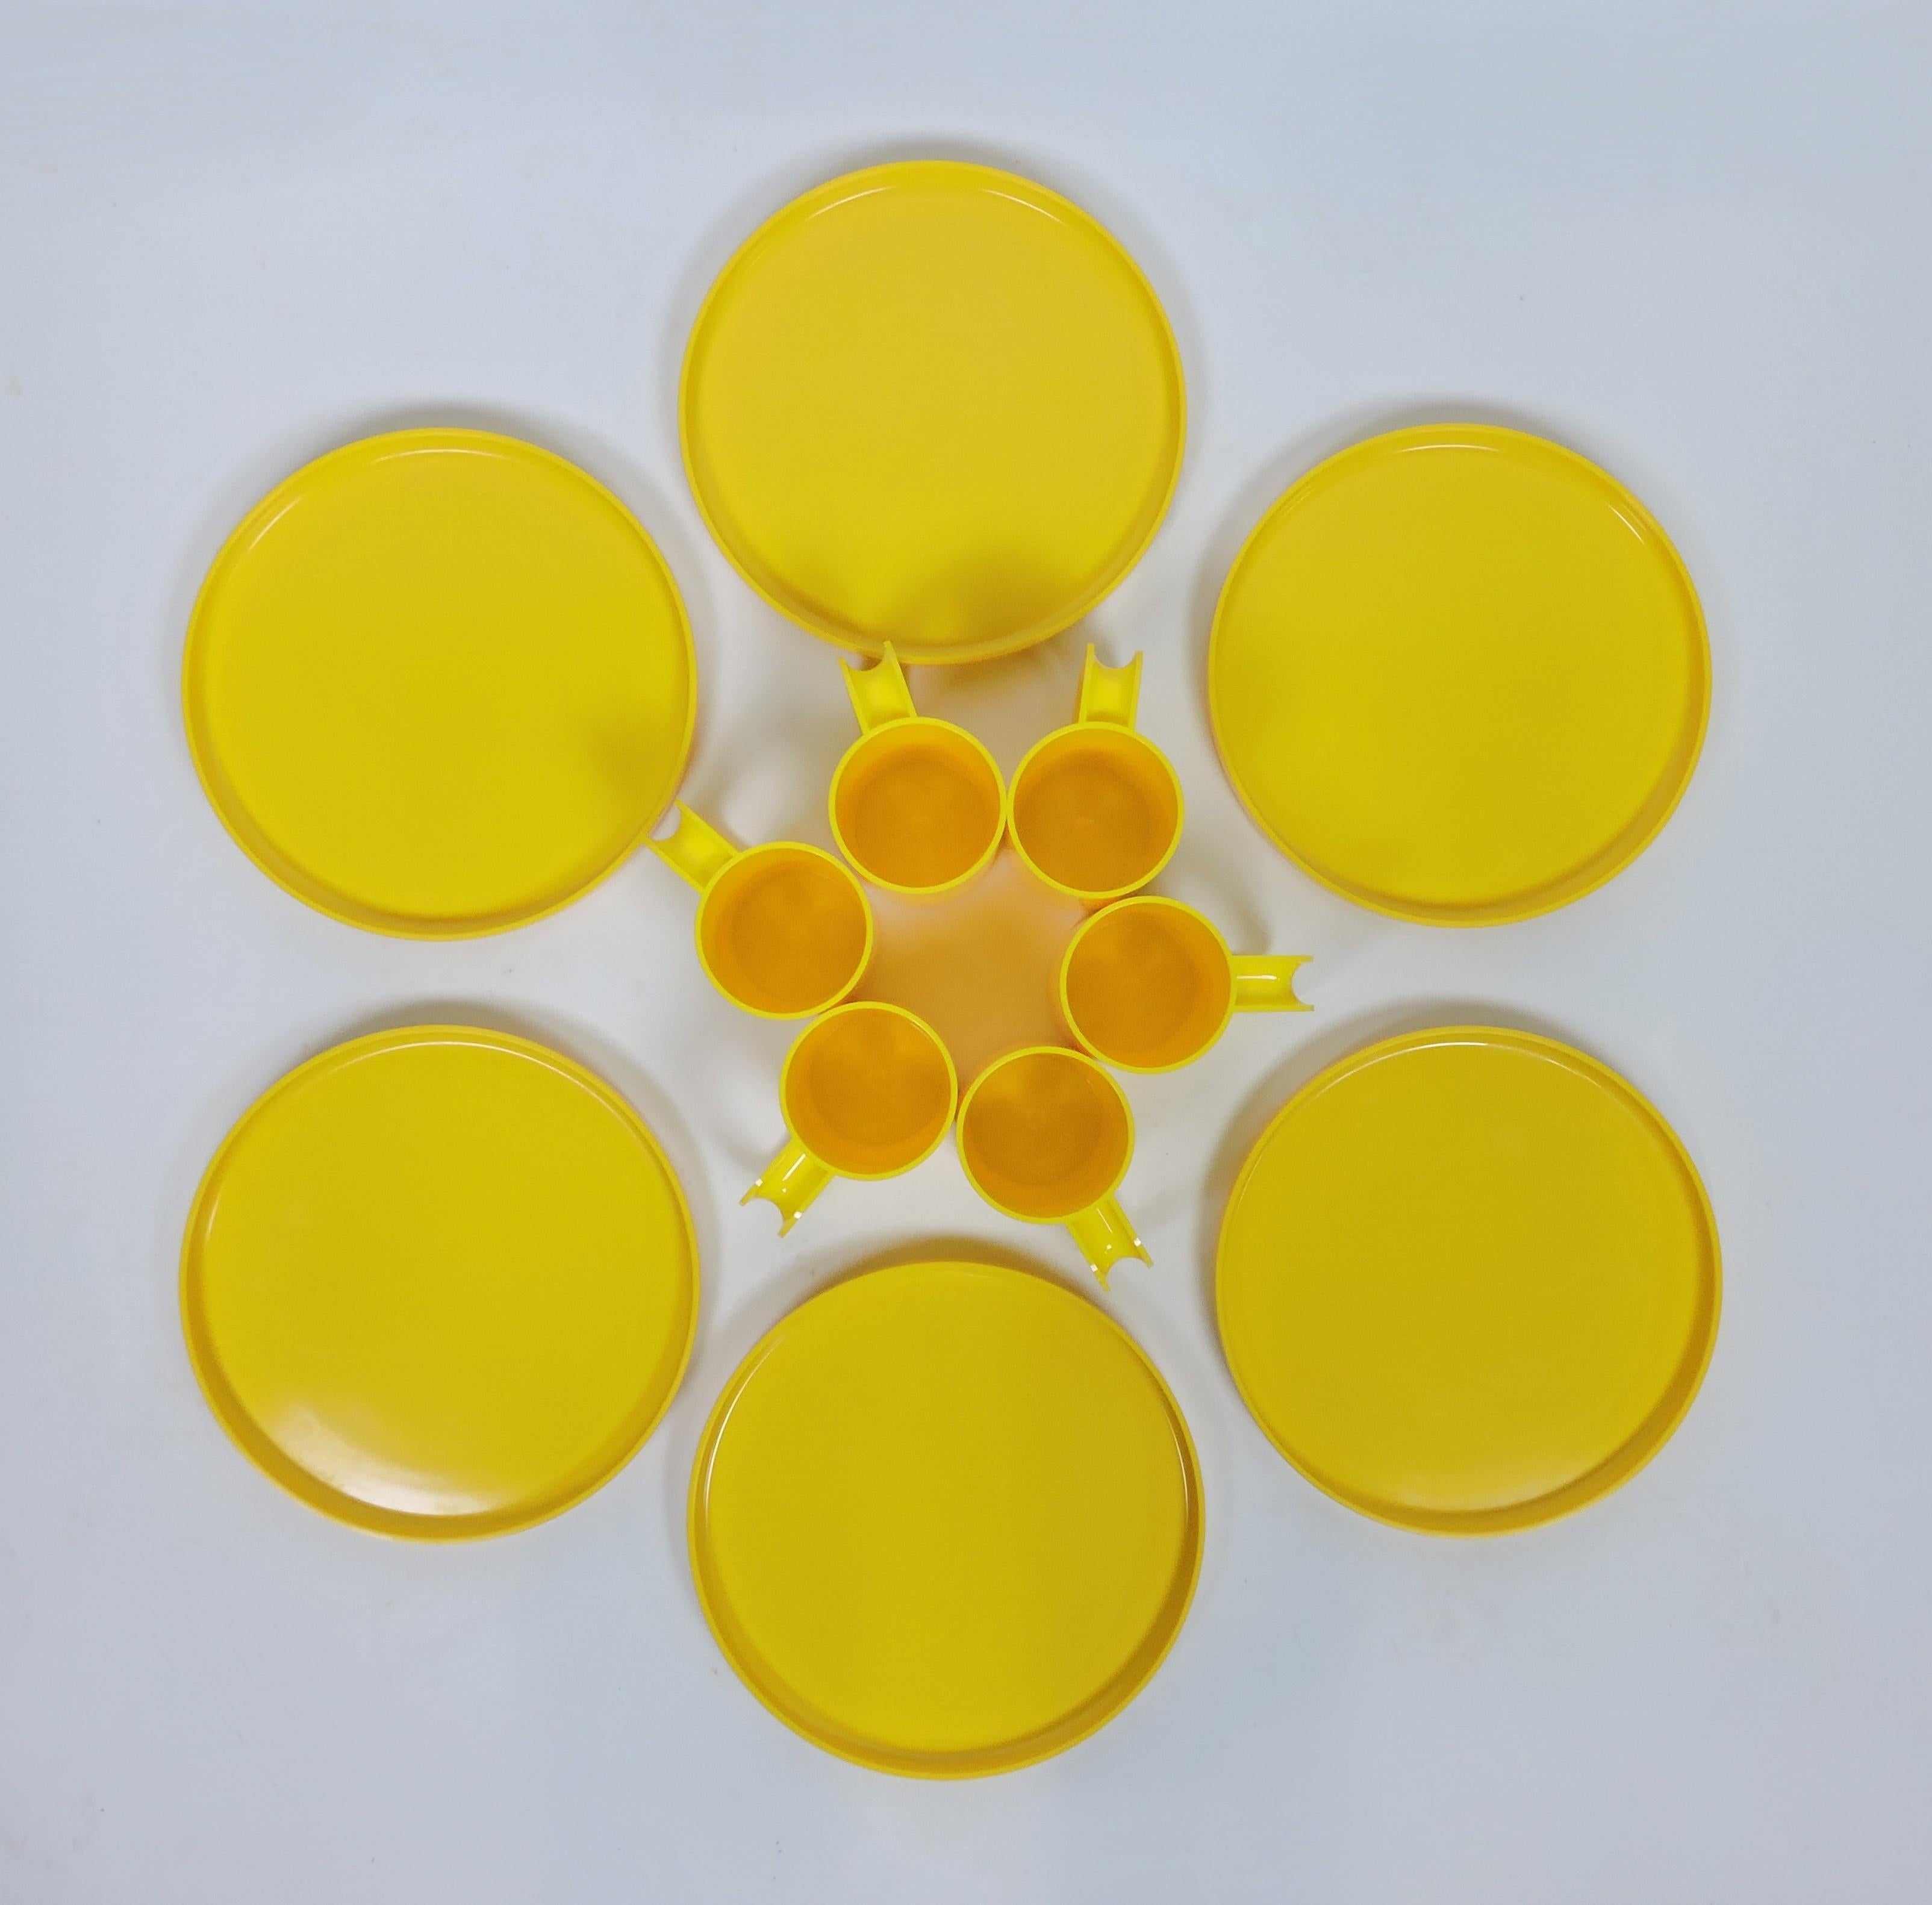 Das ikonische Design der sechziger Jahre von Massimo und Lella Vignelli für stapelbare Teller und Tassen, hergestellt von Heller. Dieses Set besteht aus 6 Esstellern und 6 Bechern in sonnengelber Farbe. Alle Tassen und ein Teller sind mit dem Heller